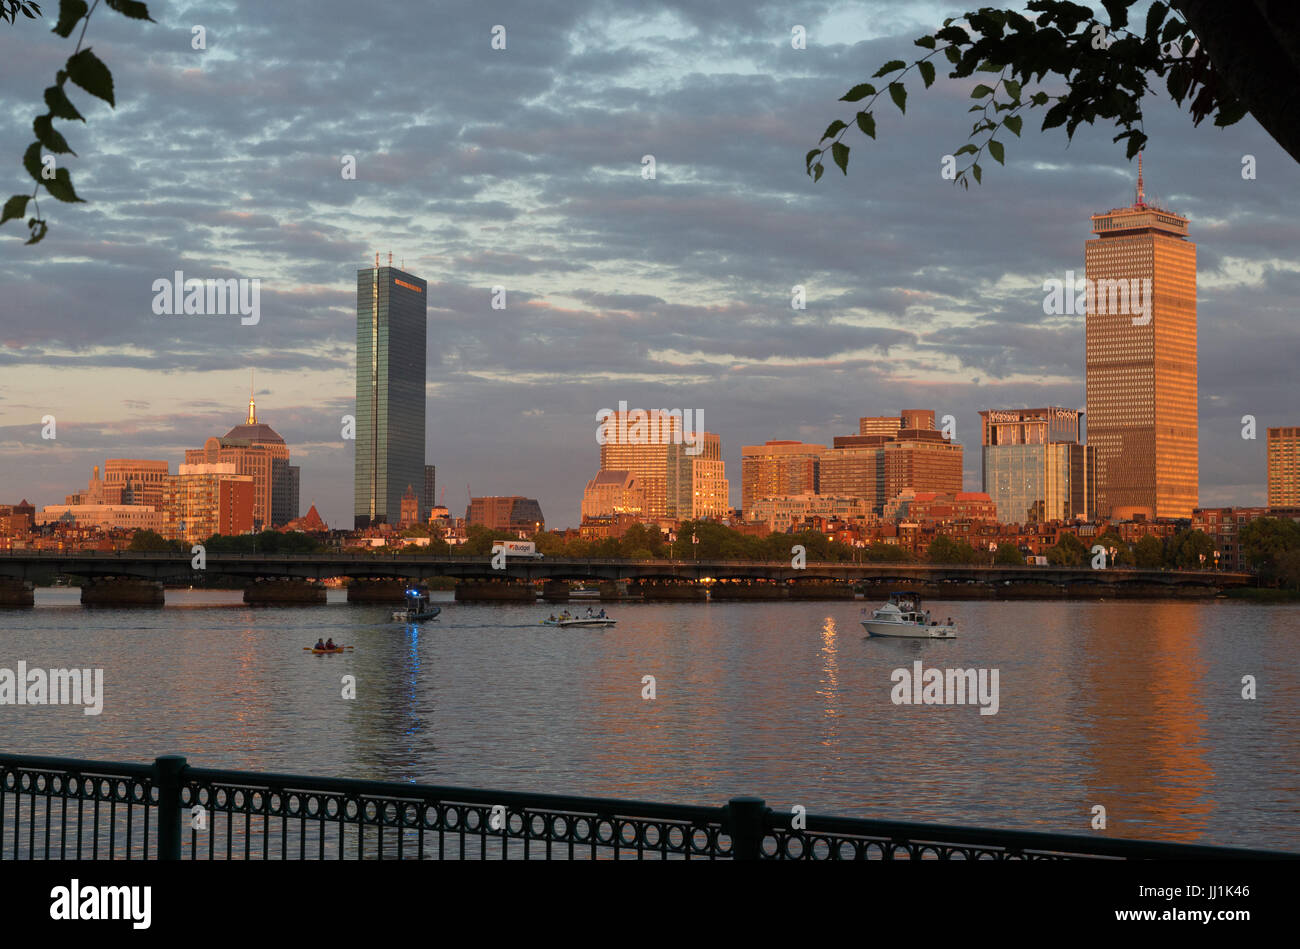 Ein Foto von der Skyline von Boston von der Charles River Waterfront am 4. Juli 2017 gesehen. Aufgenommen im goldenen Stunde bevor das Feuerwerk begann. Stockfoto